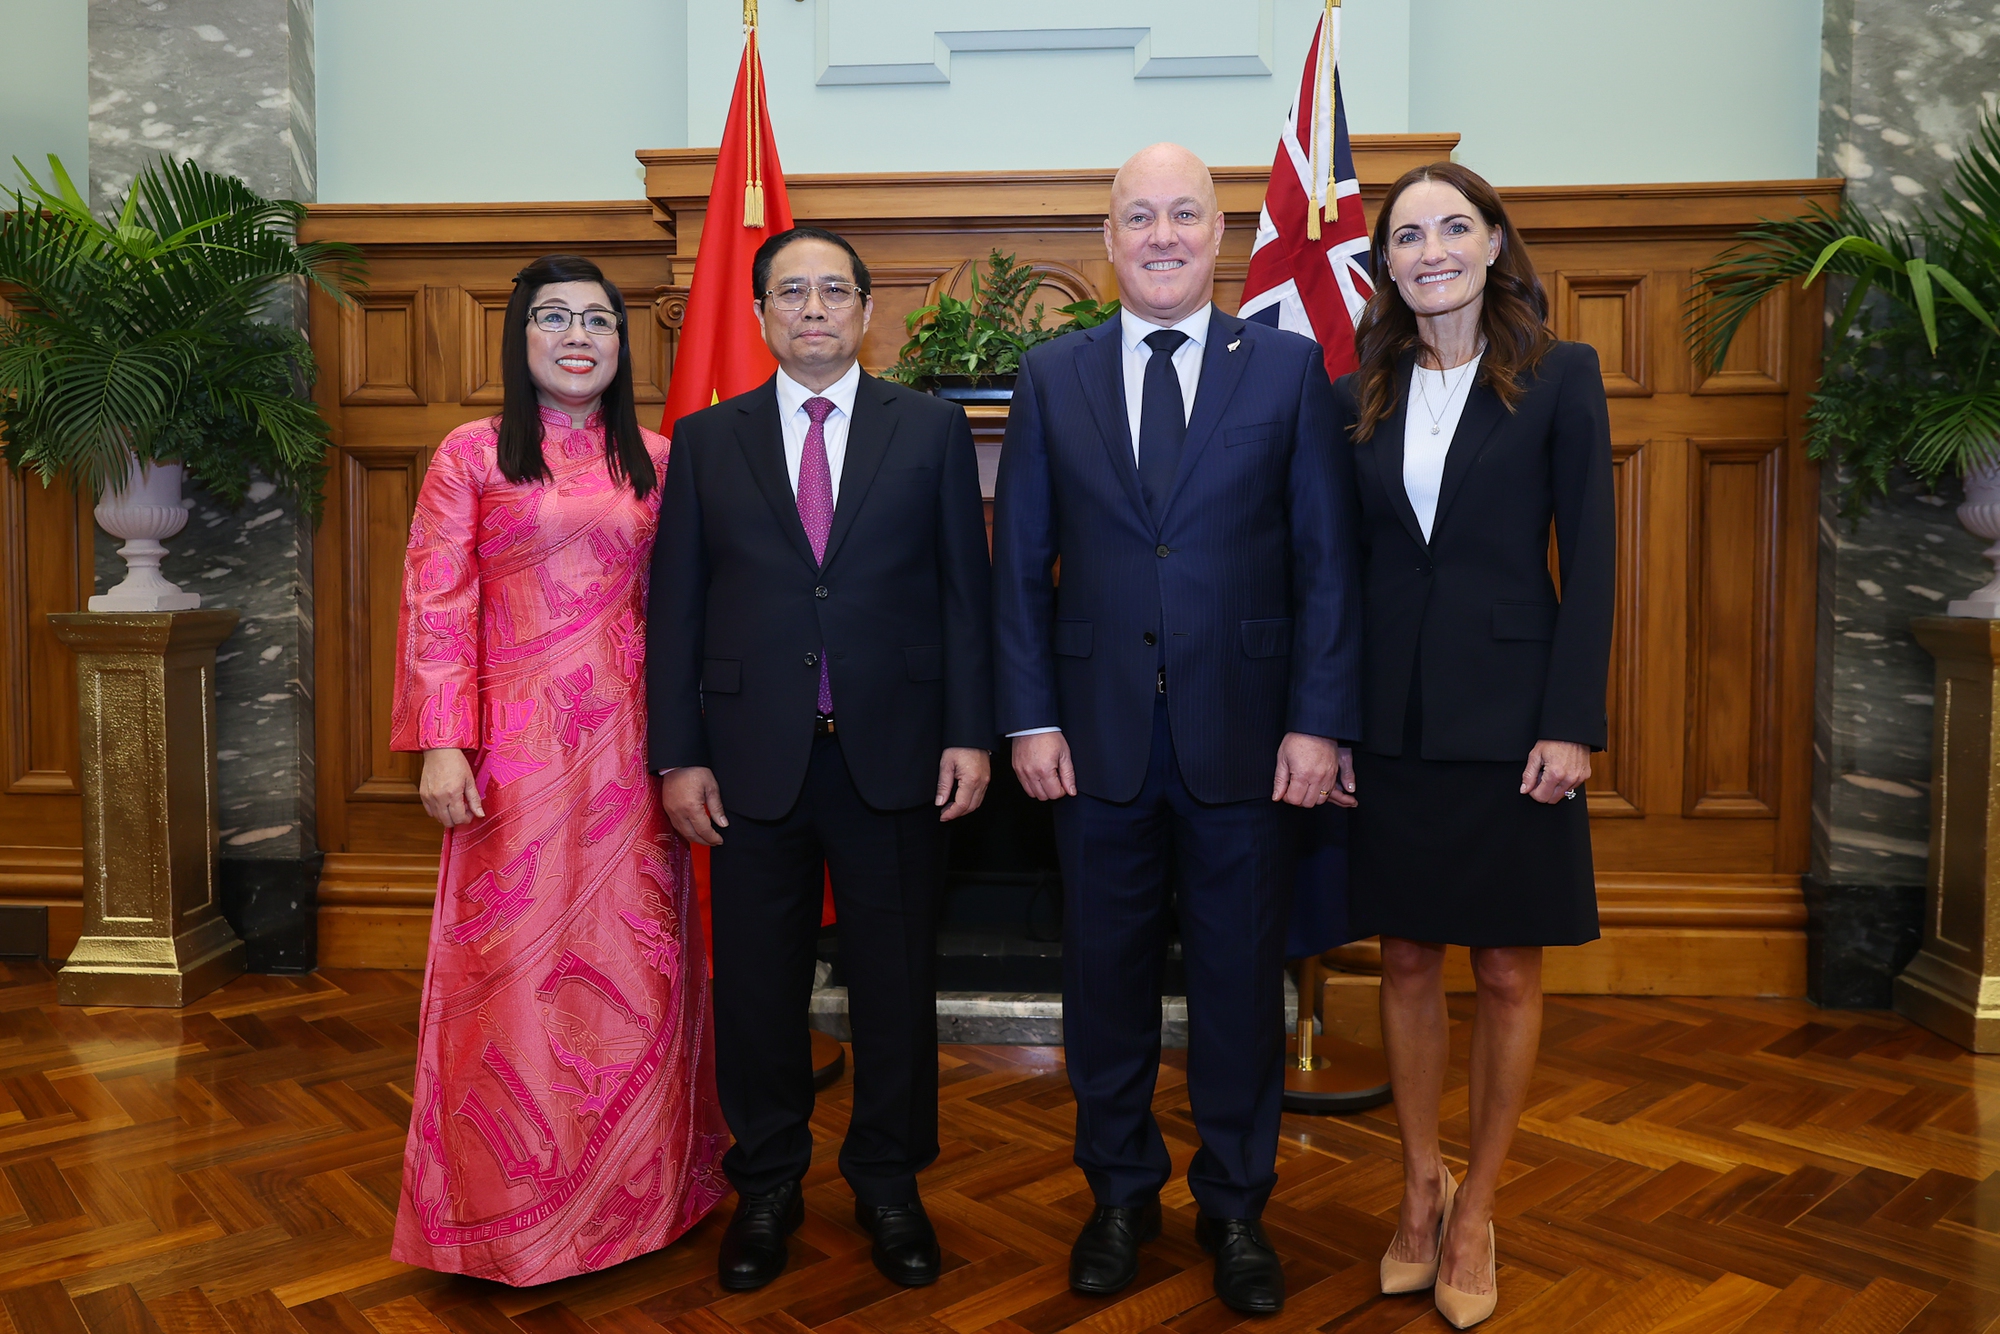 Ba cặp từ khóa và cuộc hội đàm rất đặc biệt, rất thành công giữa 2 Thủ tướng Việt Nam - New Zealand- Ảnh 13.